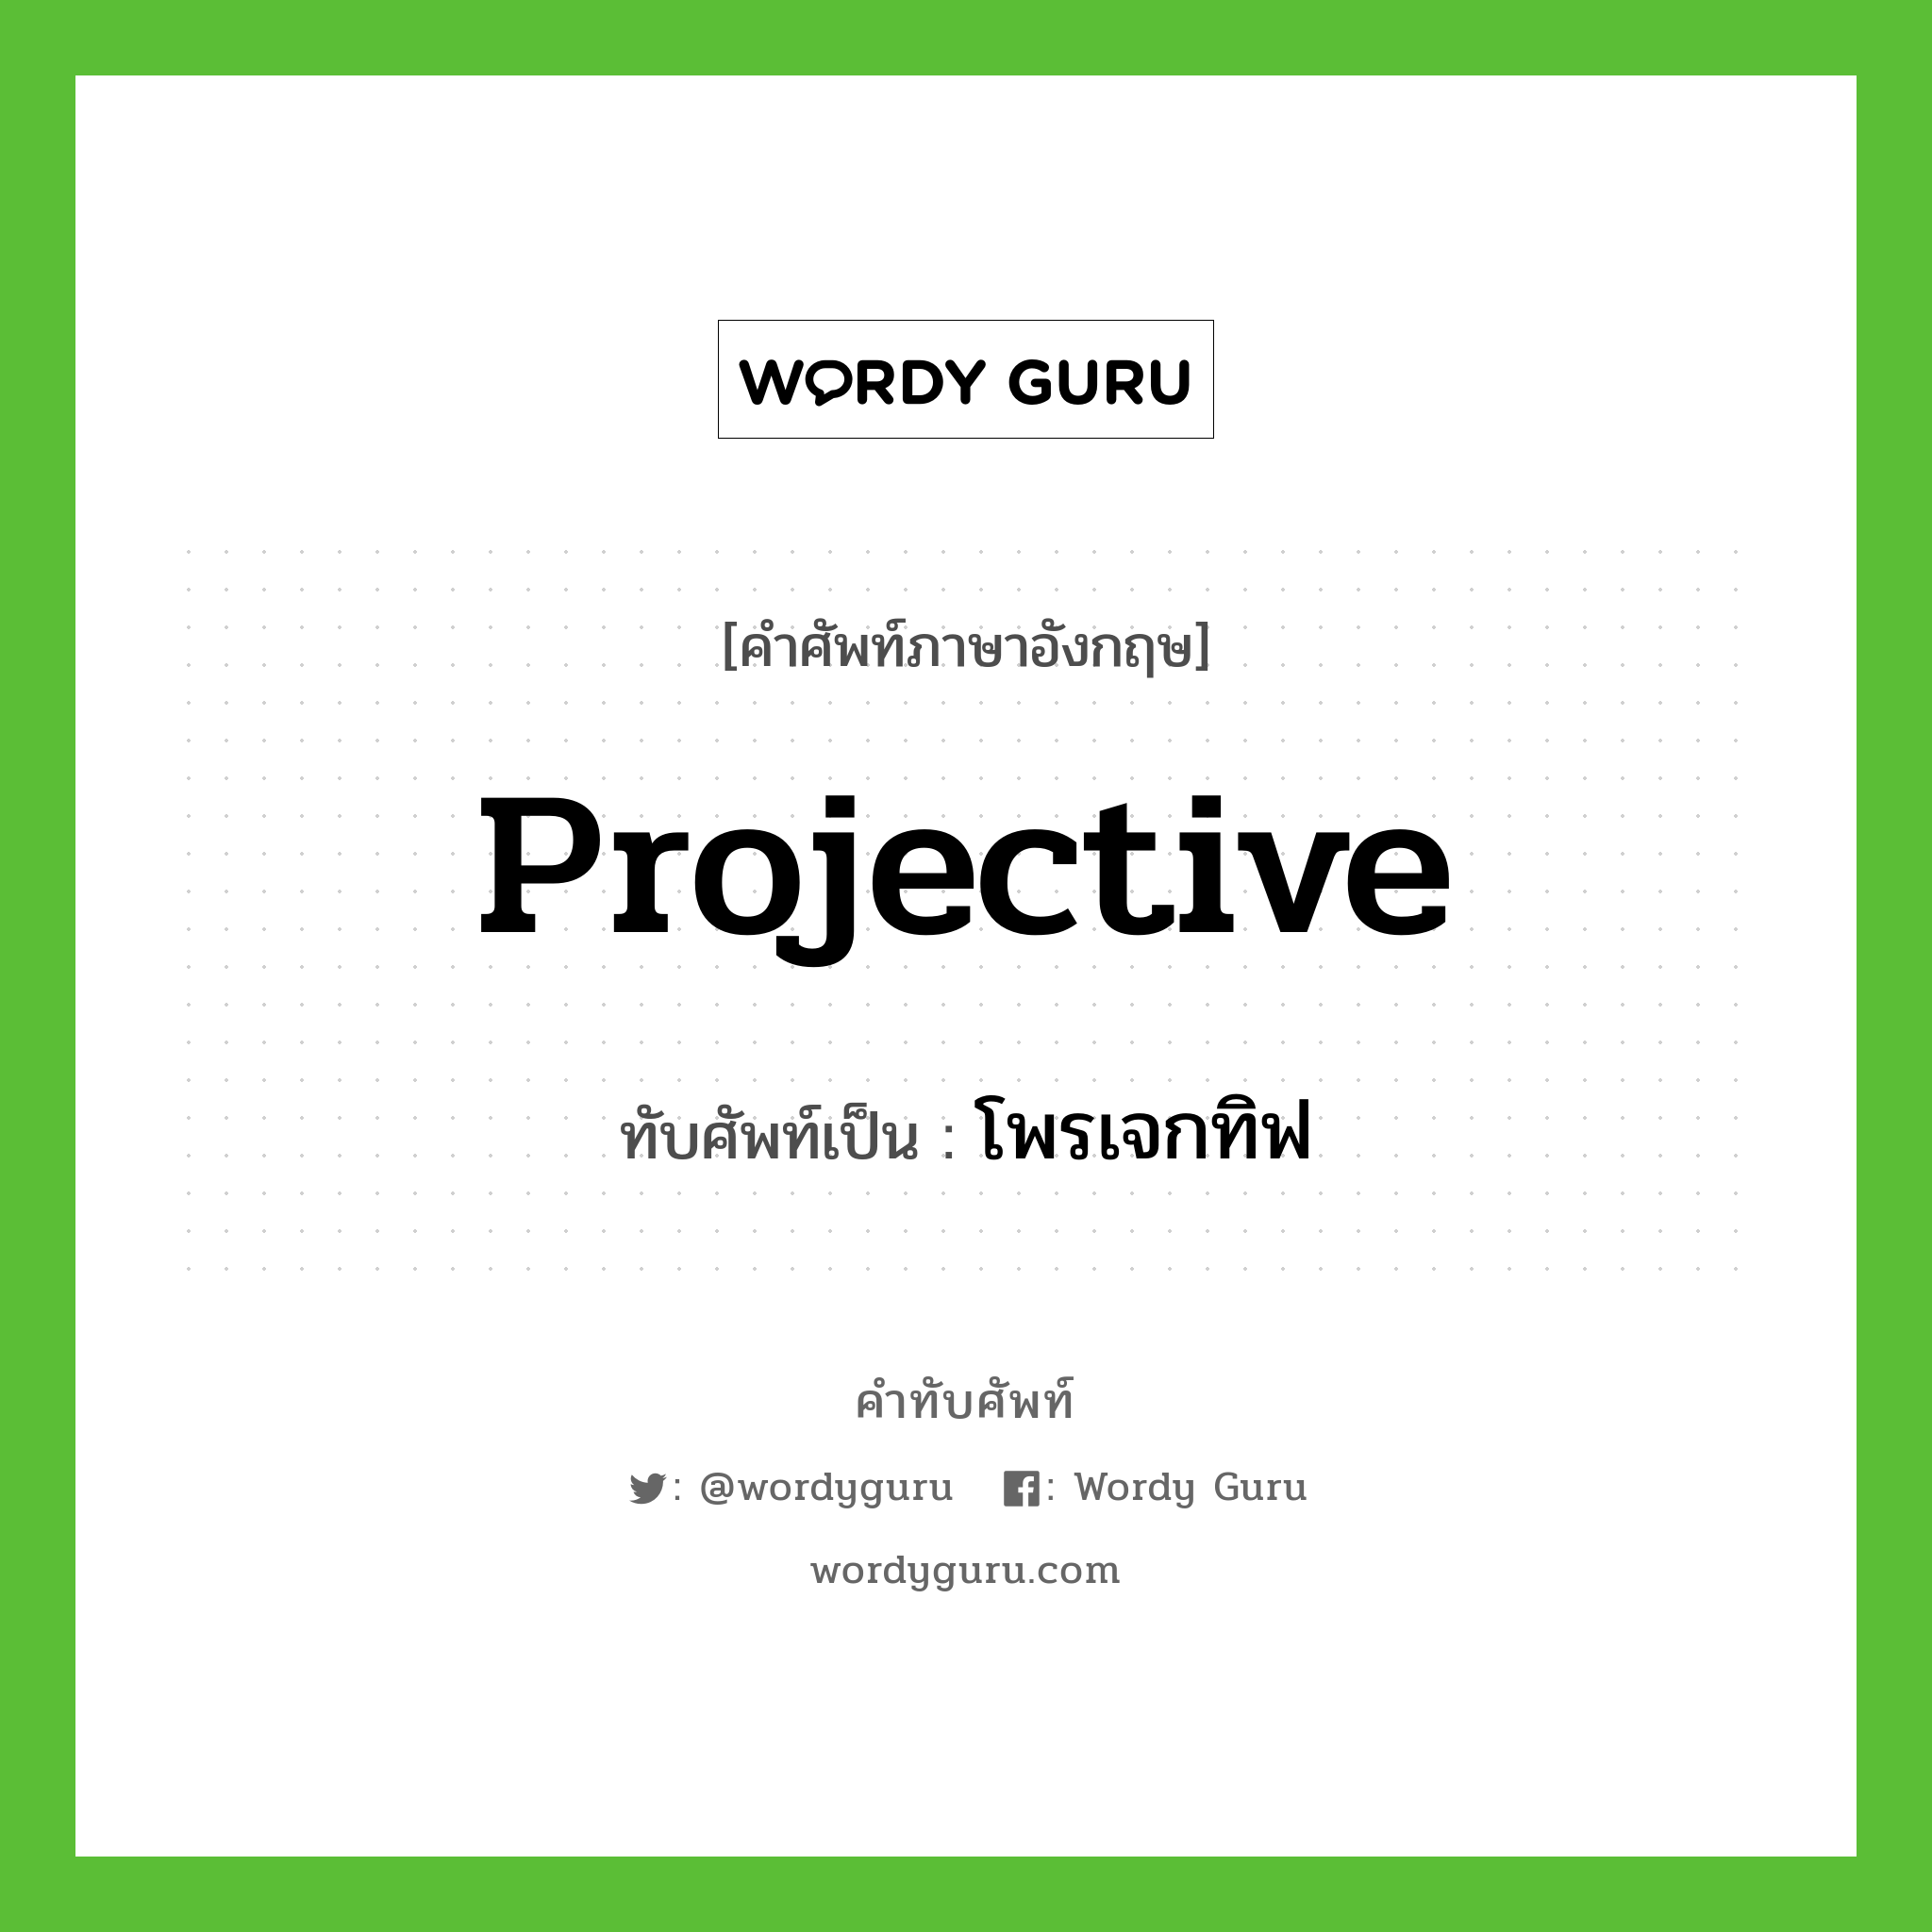 projective เขียนเป็นคำไทยว่าอะไร?, คำศัพท์ภาษาอังกฤษ projective ทับศัพท์เป็น โพรเจกทิฟ